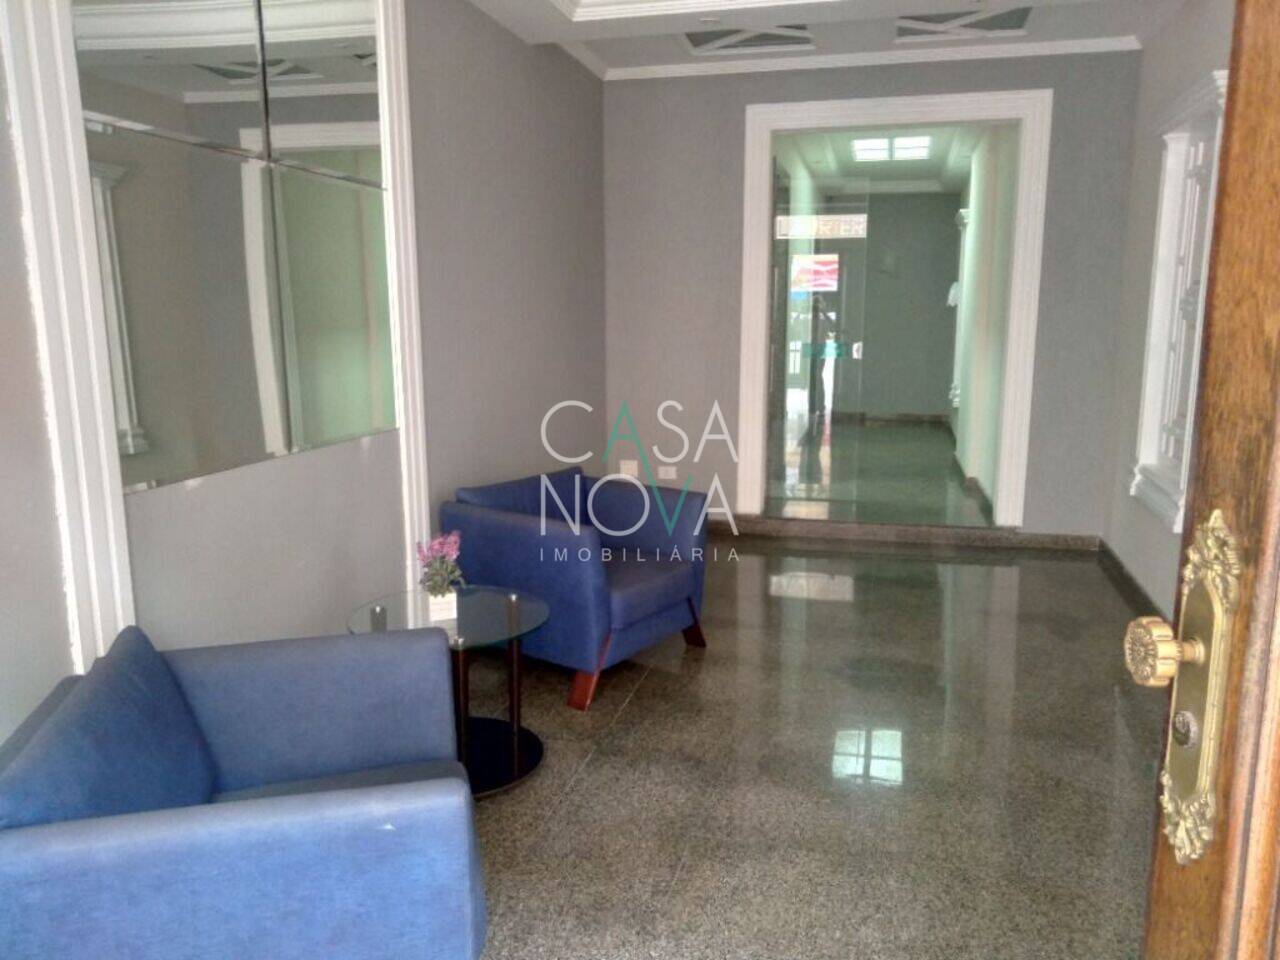 Apartamento Pompéia, Santos - SP